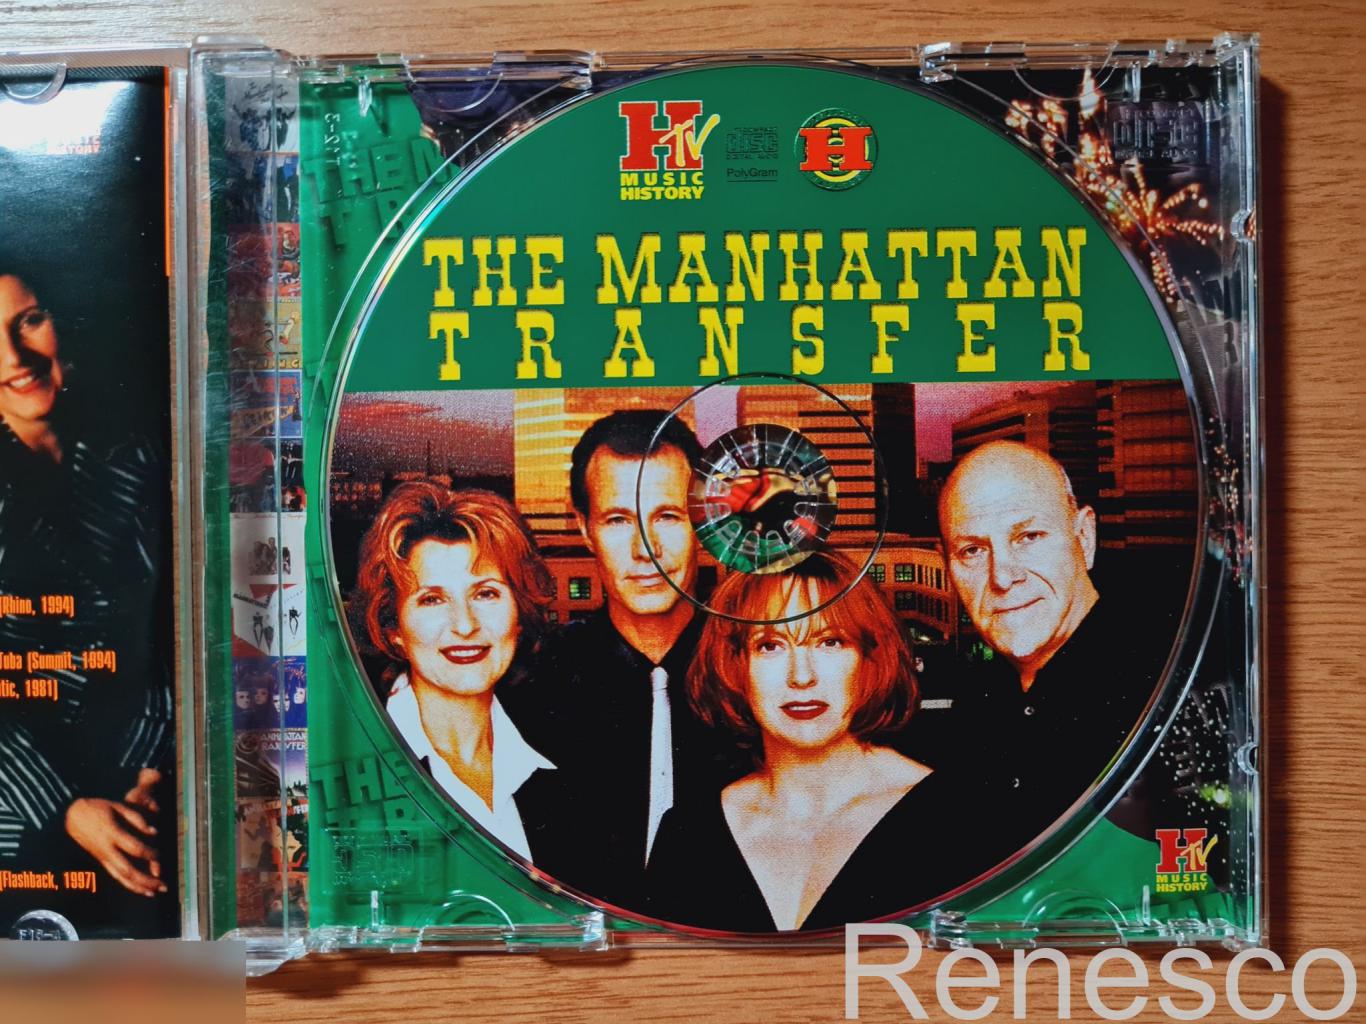 The Manhattan Transfer – The Manhattan Transfer (Russia) (2001) 4